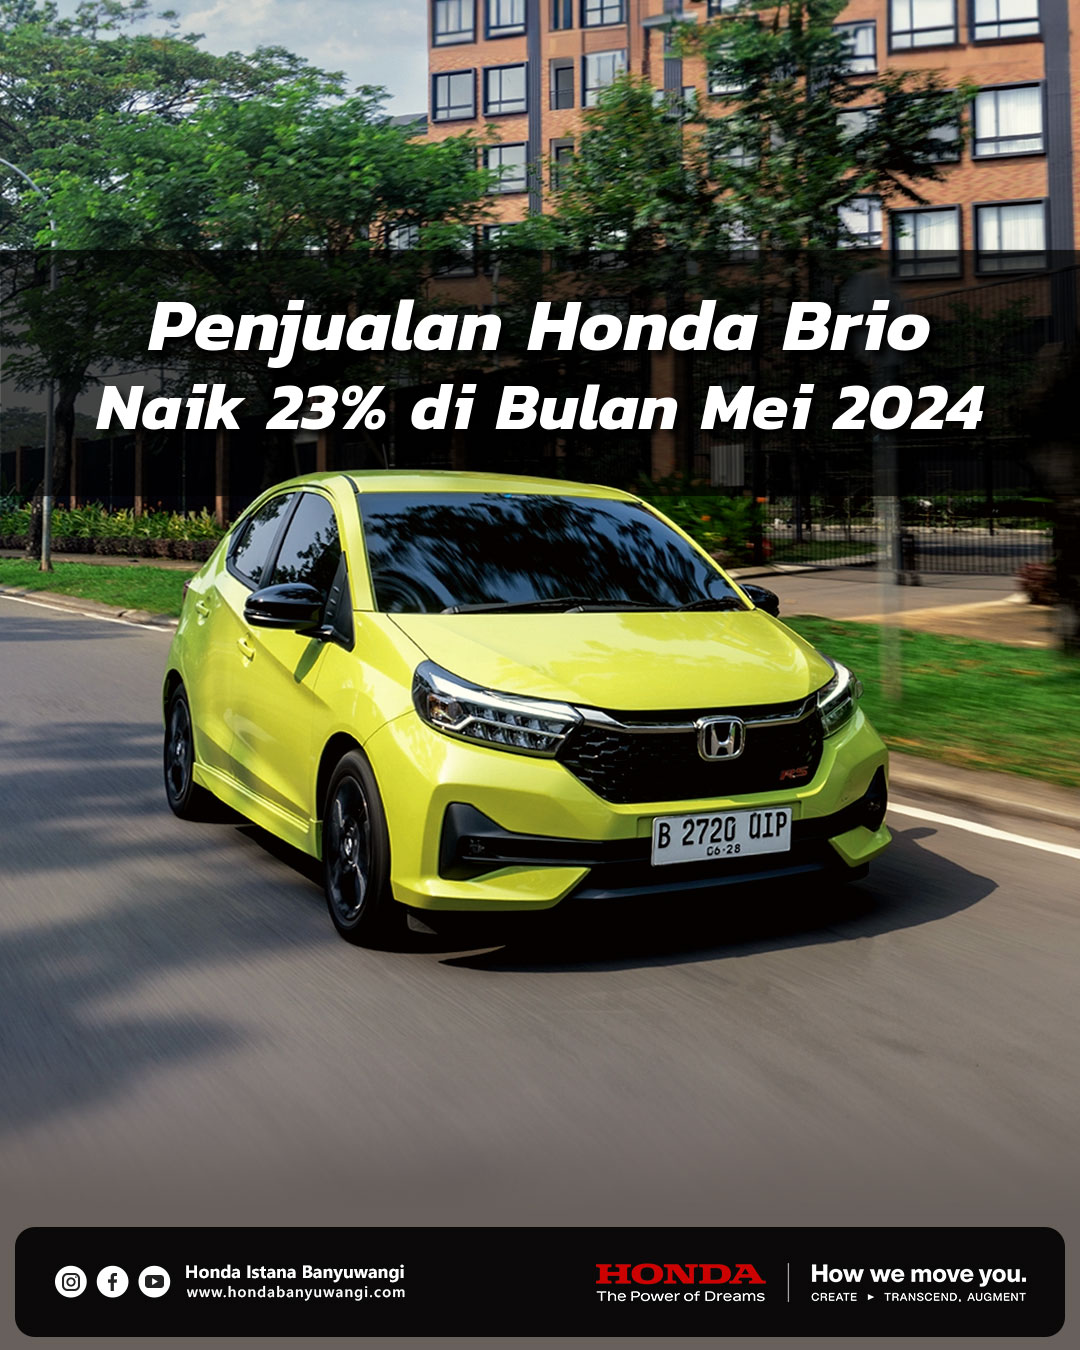 Penjualan Honda Bulan Mei 2024